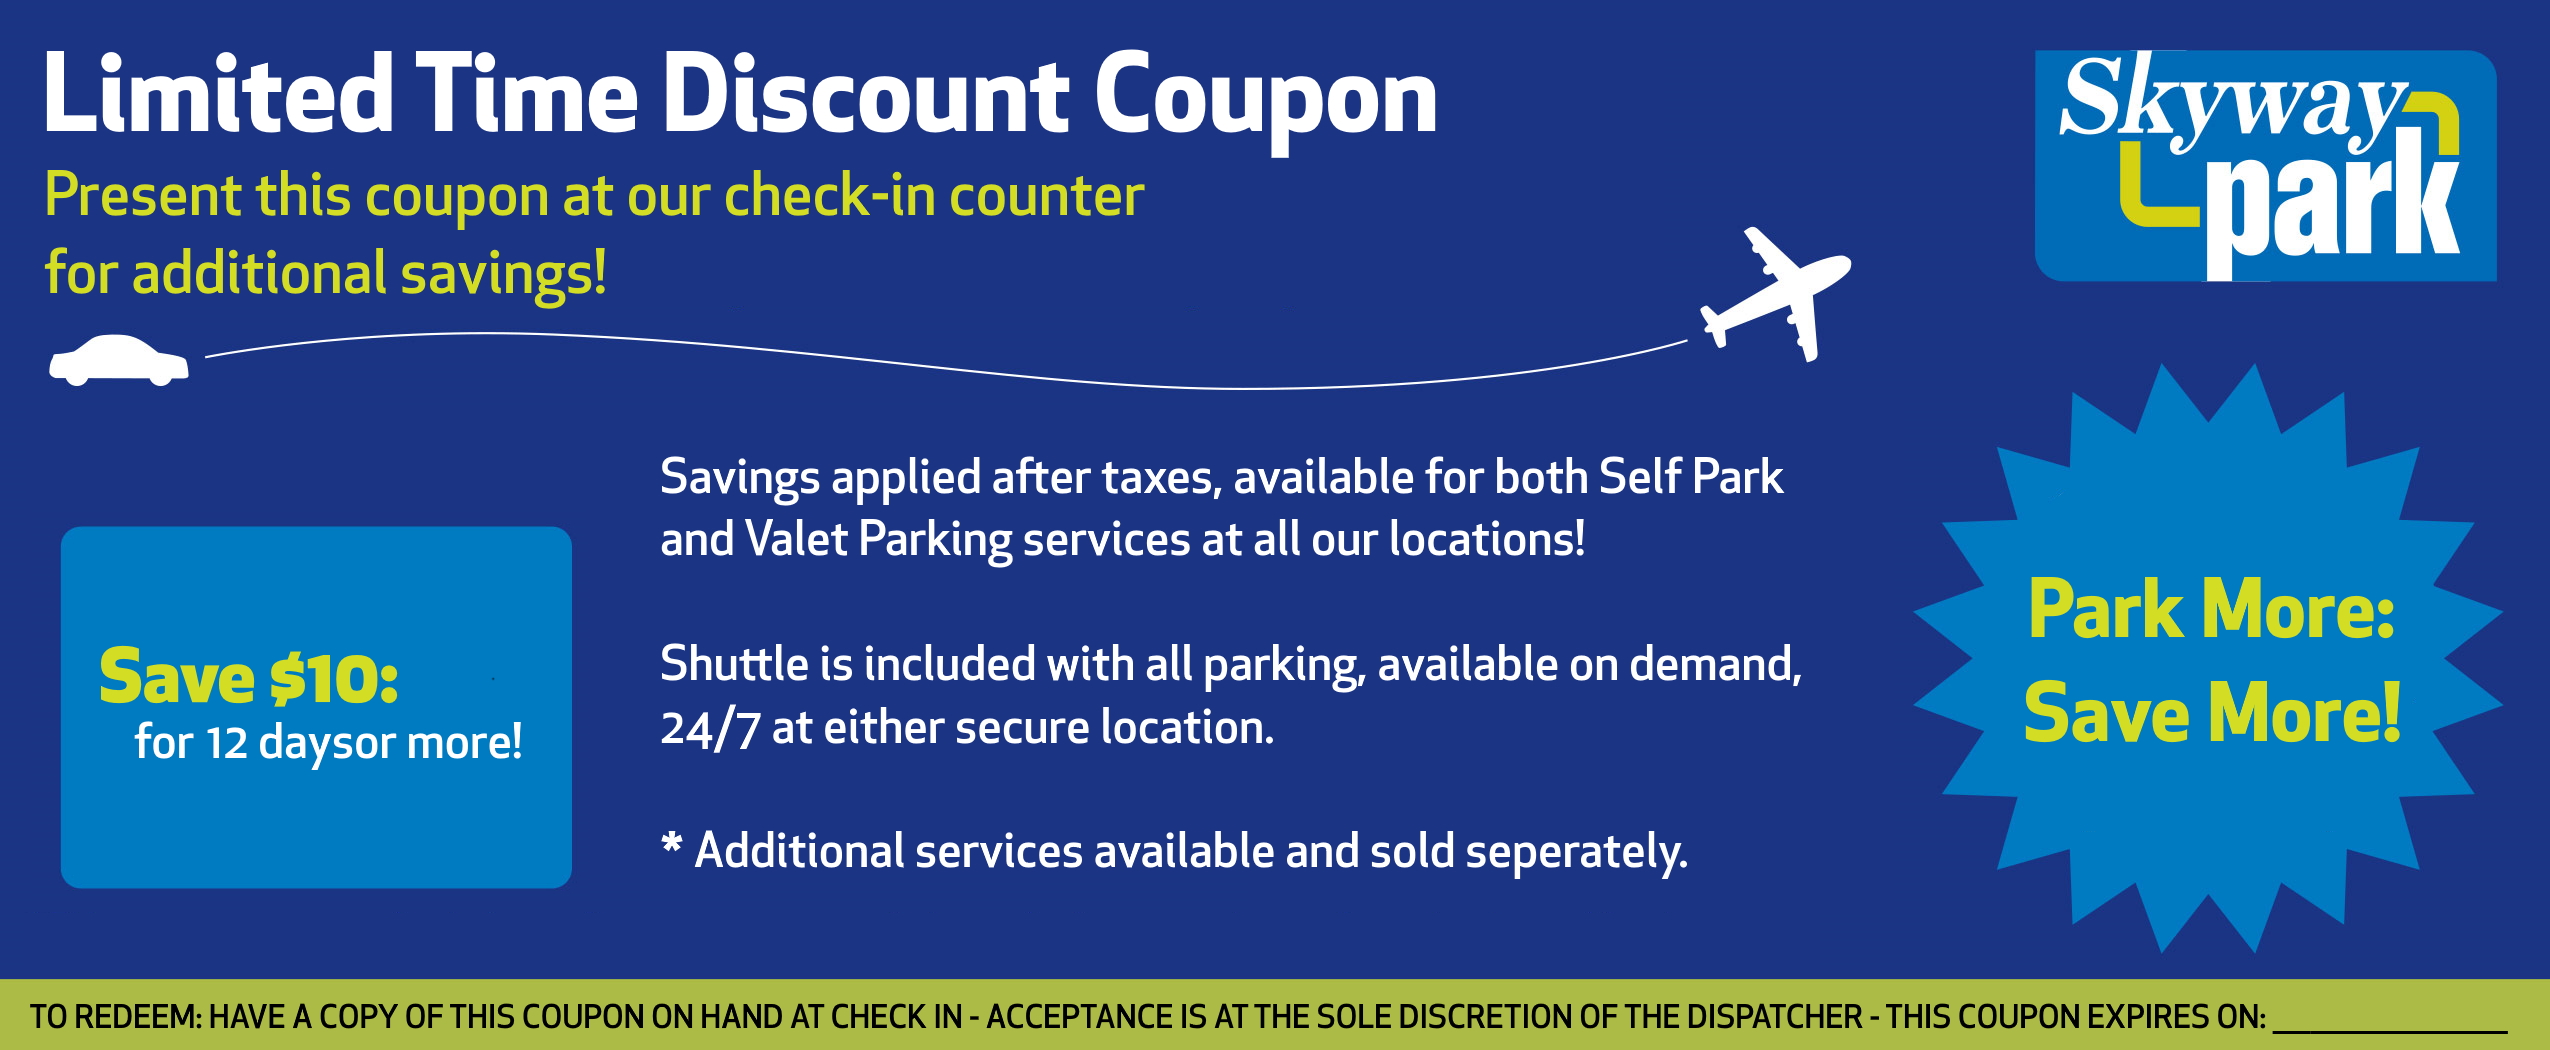 kansas city international airport parking coupon